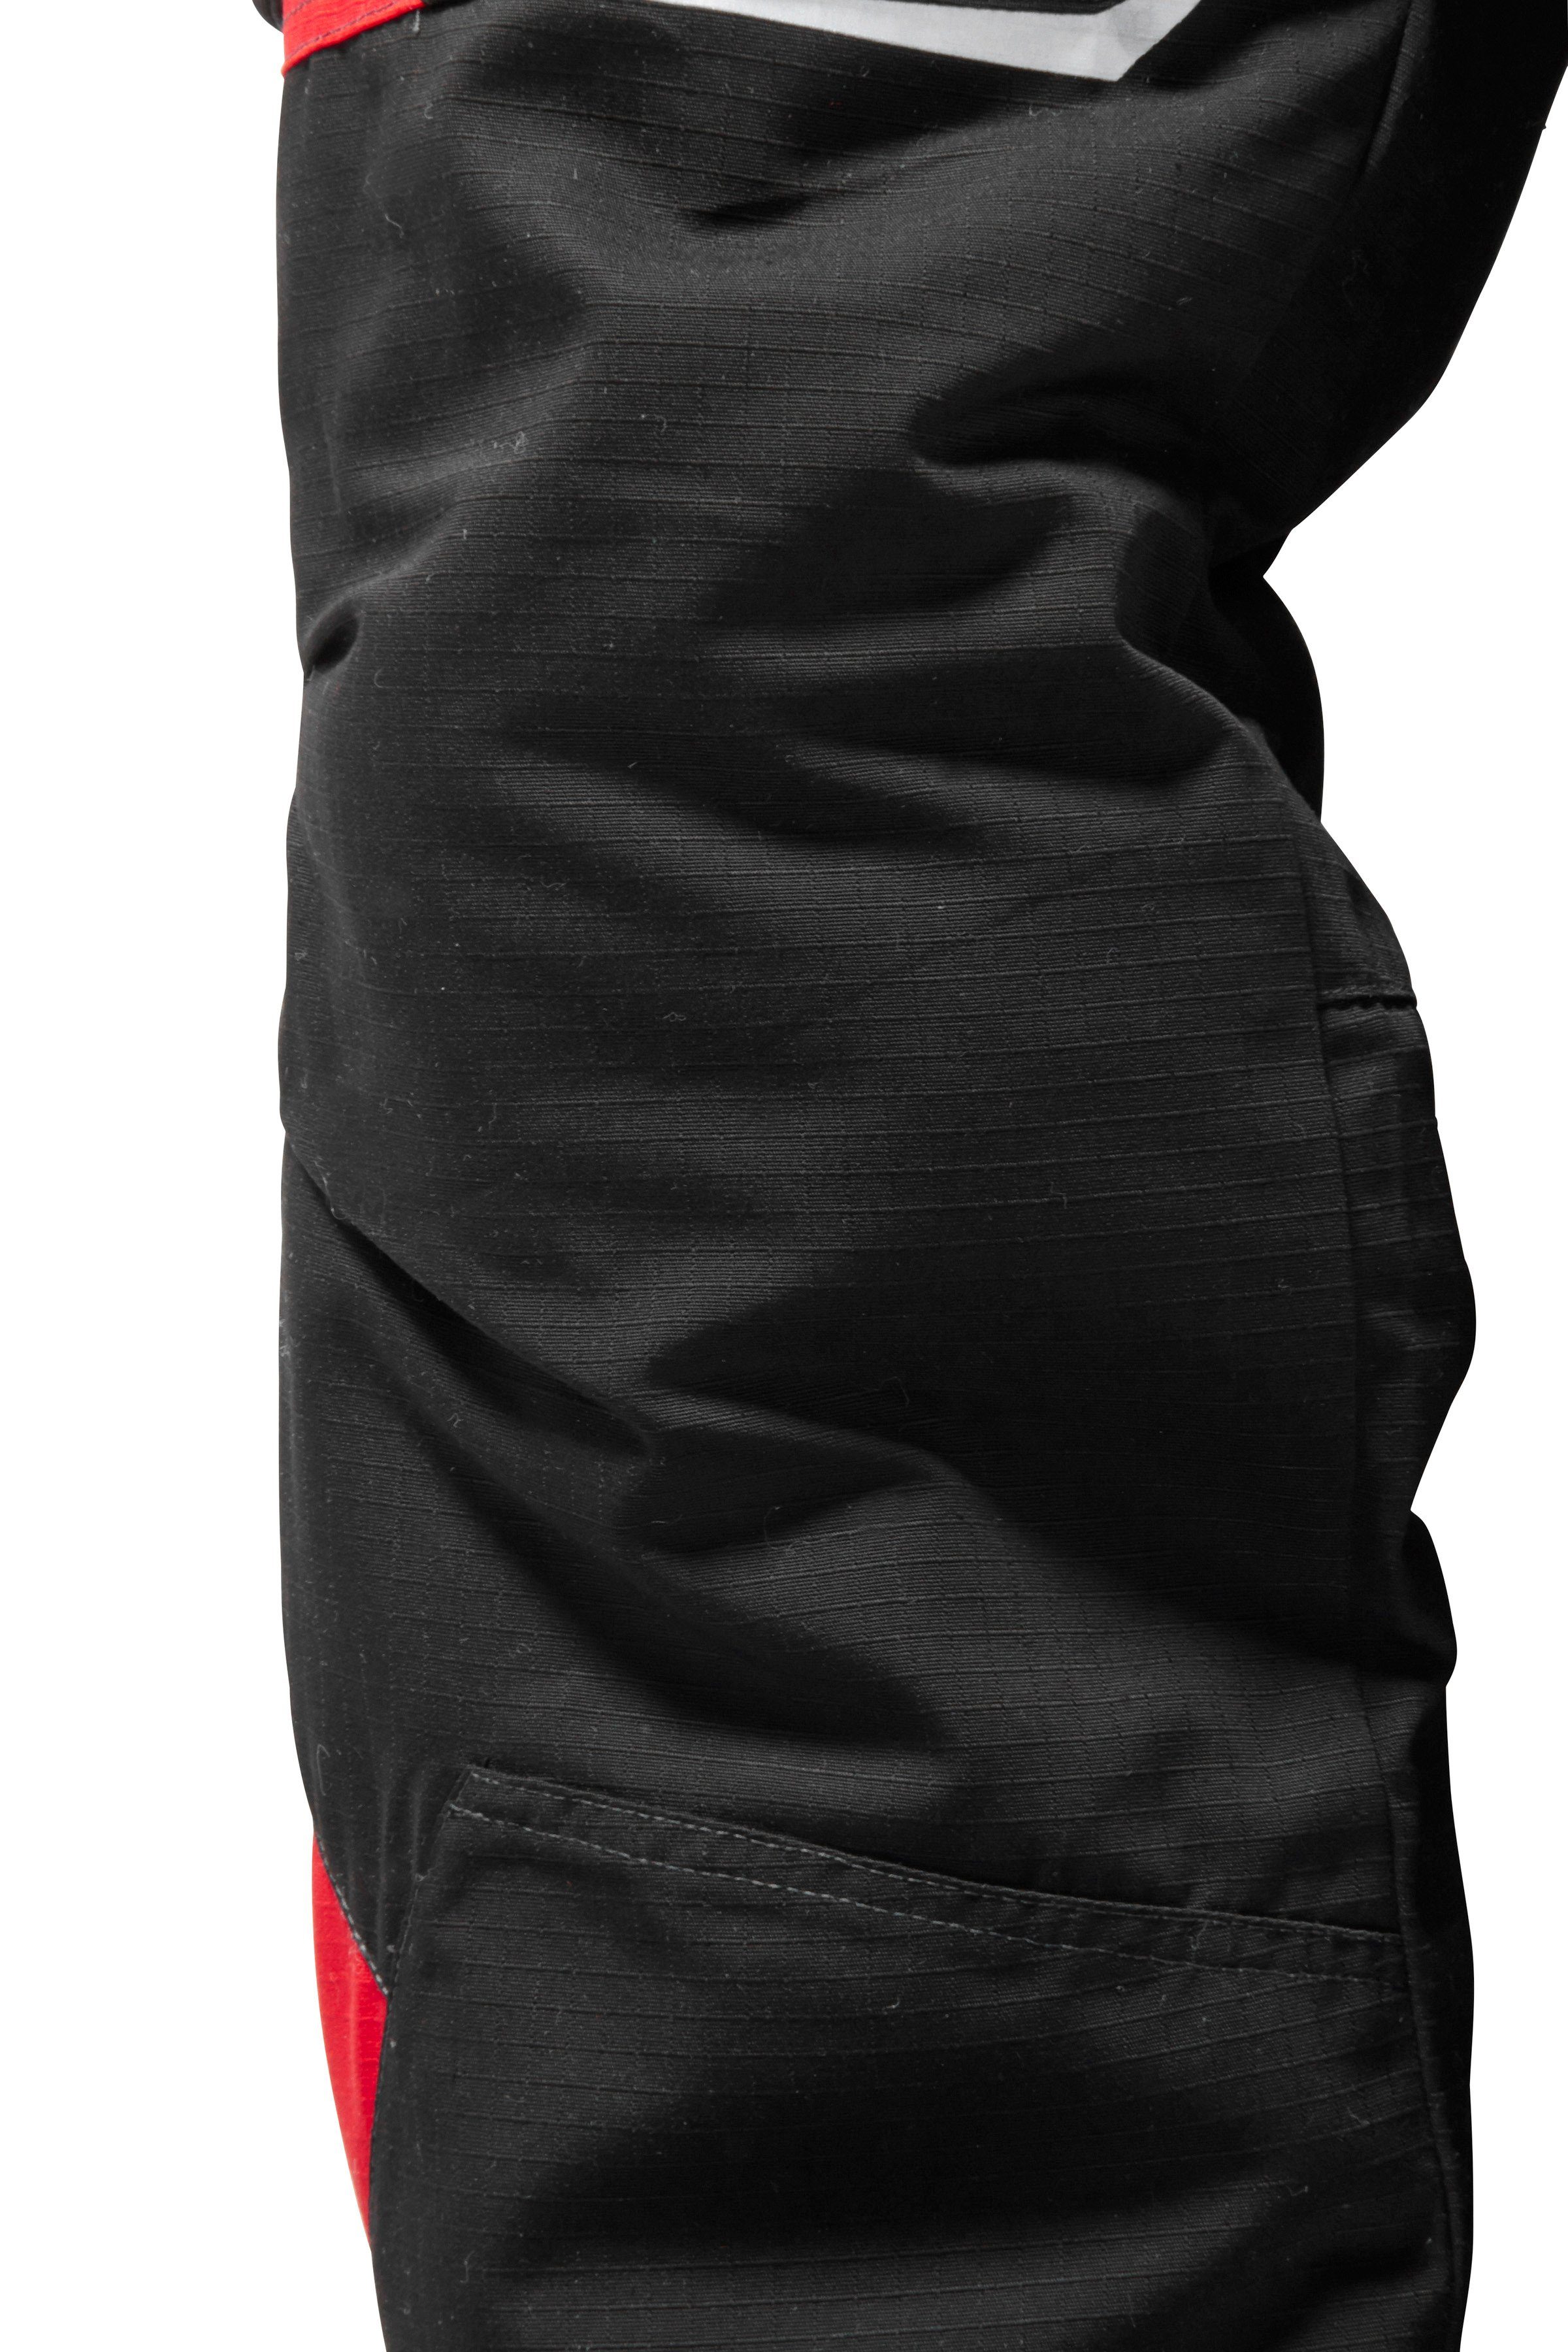 Kübler Arbeitshose Pulsschlag CORDURA® mit rot-schwarz Verstärkungen